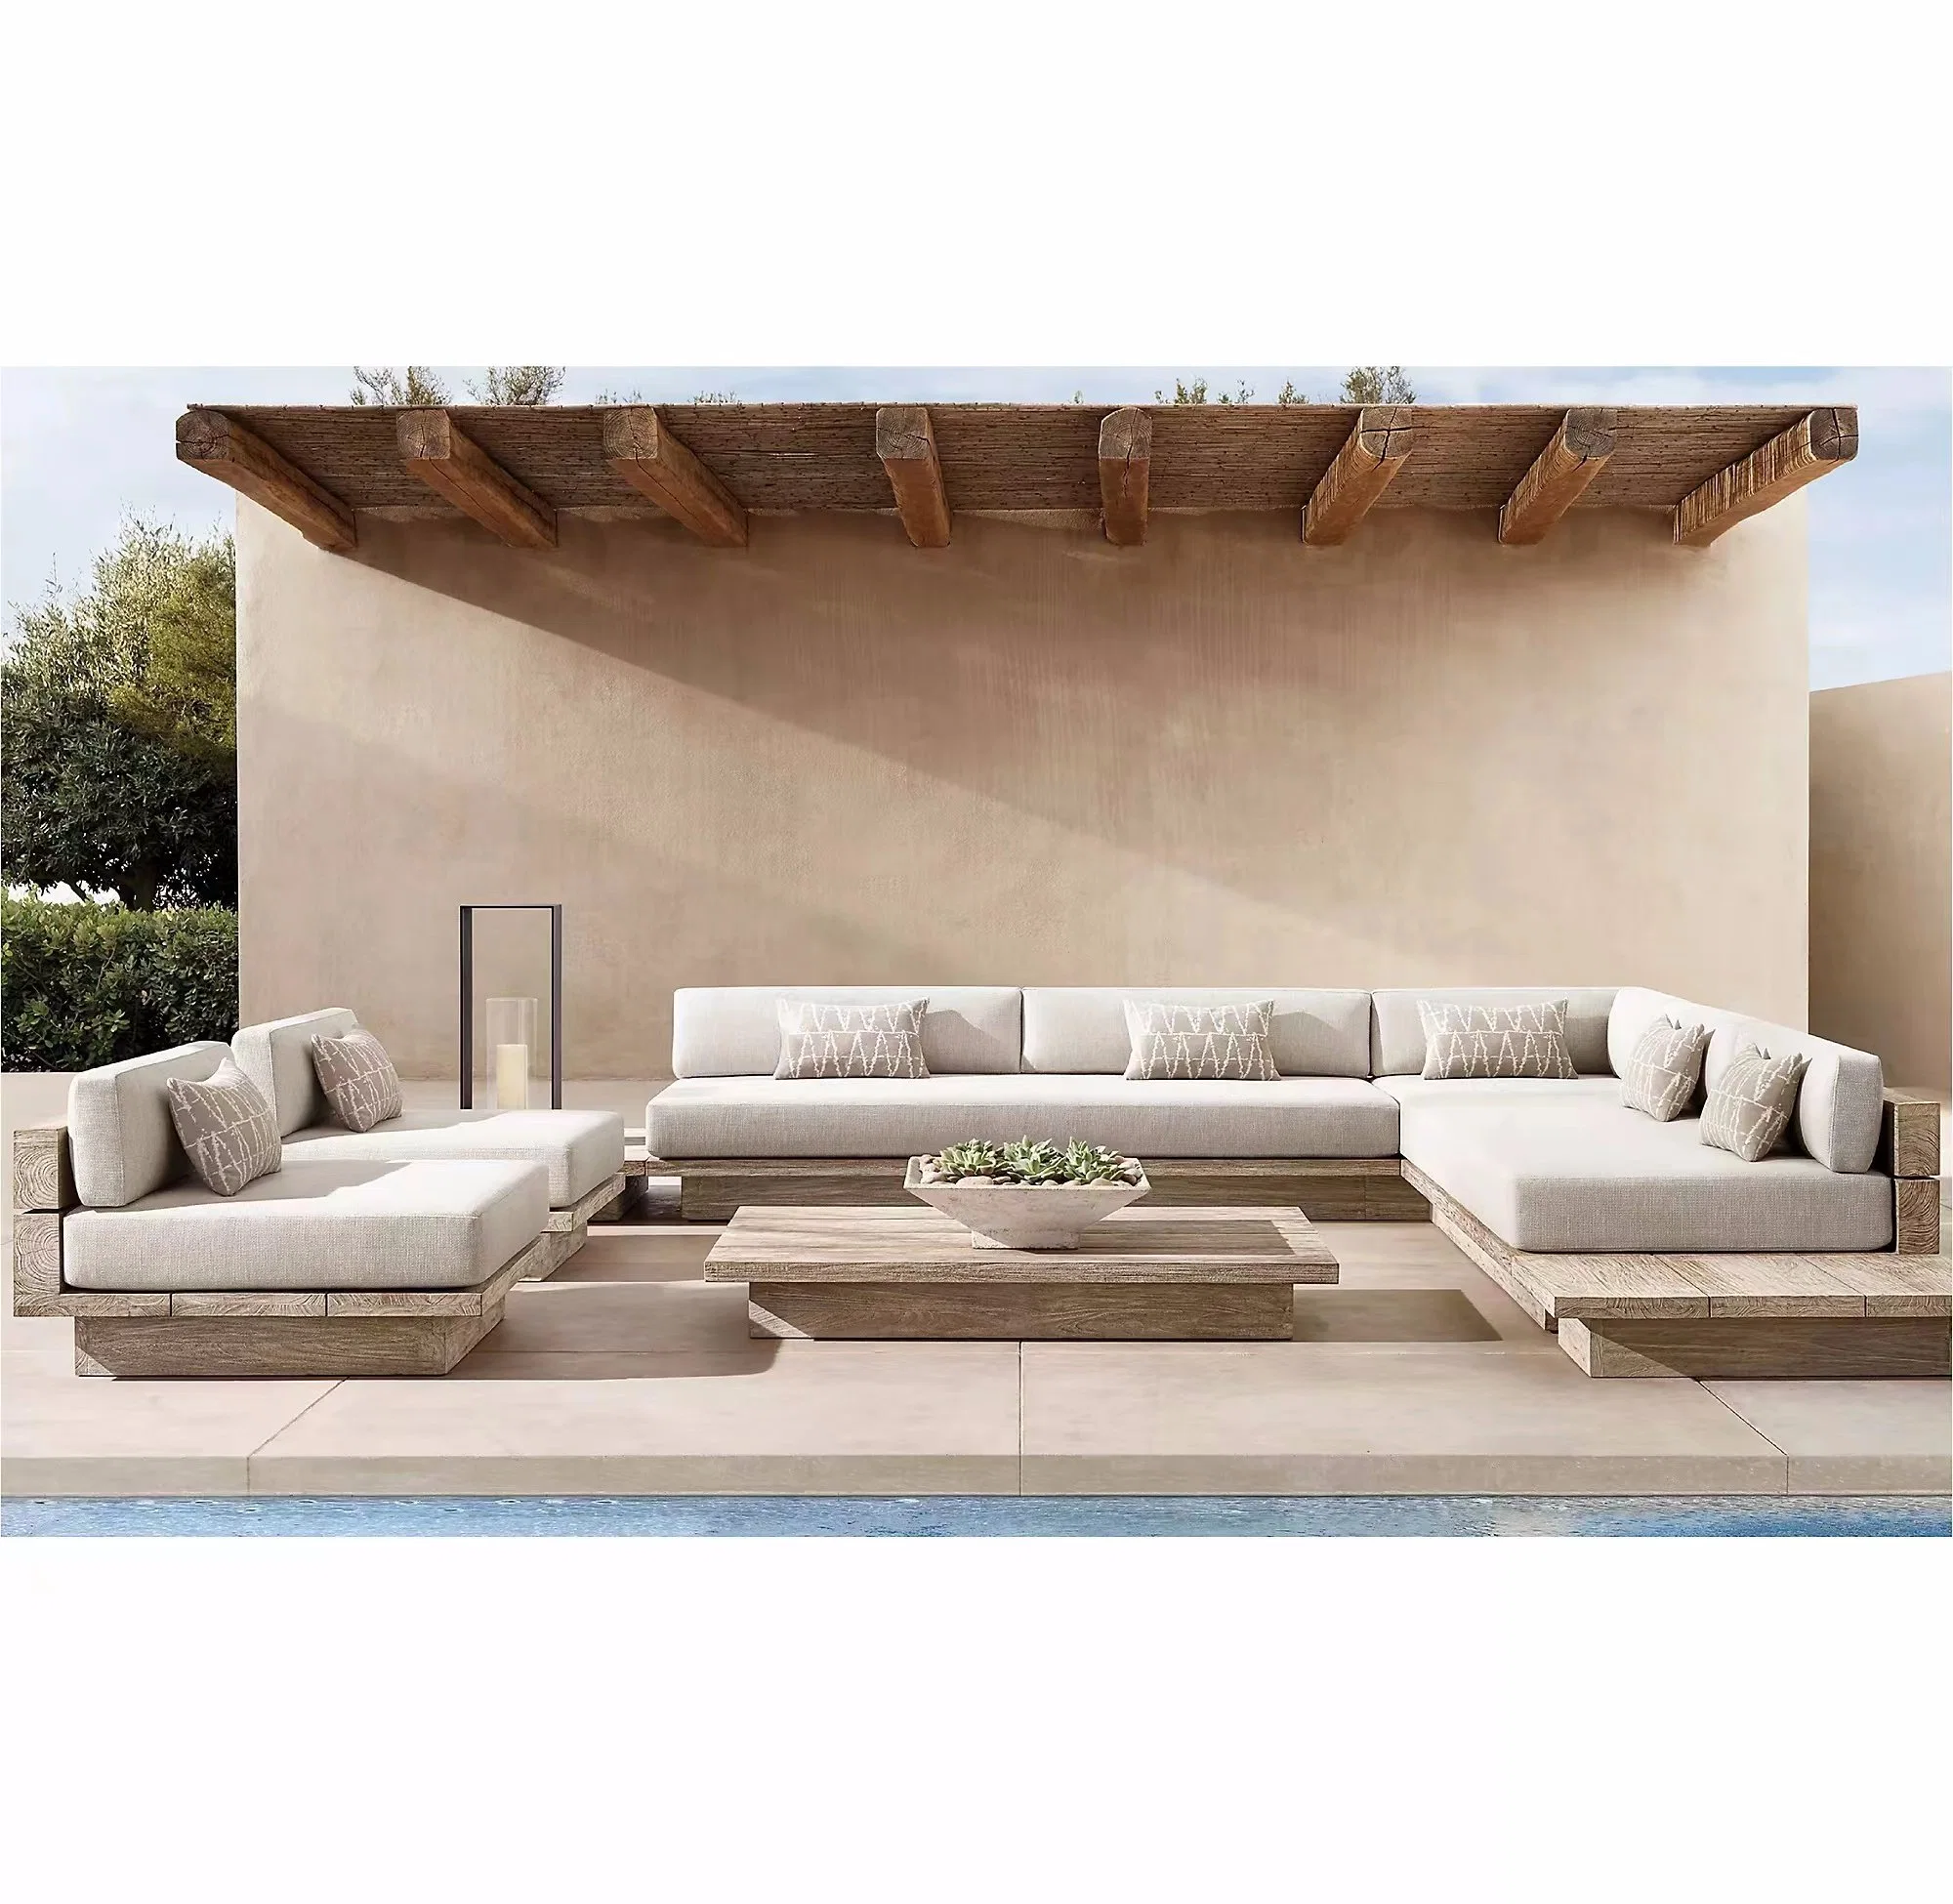 Moderno Garden Patio mobiliário exterior Solid Madeira Teak Sofá set